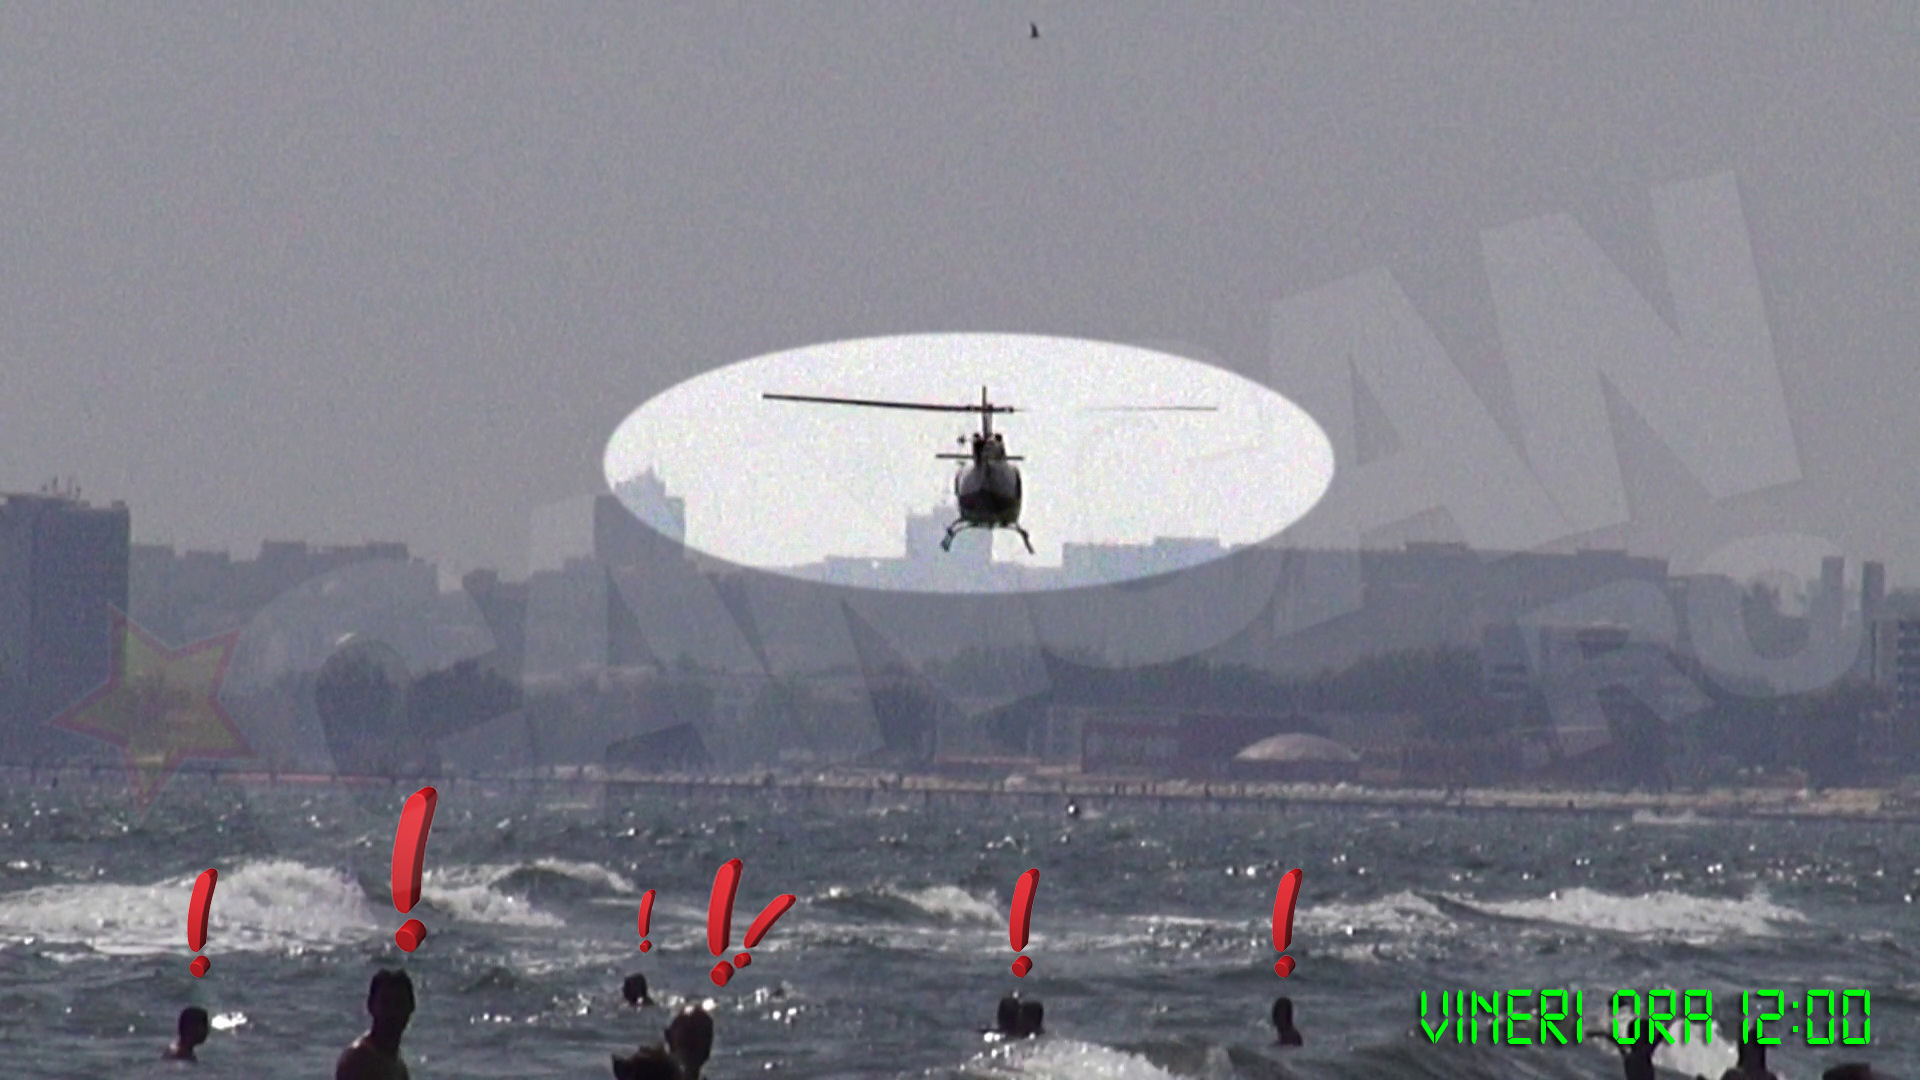 Elicopterul a coborat pana aproape de apa, speriindu-i pe turistii care inotau